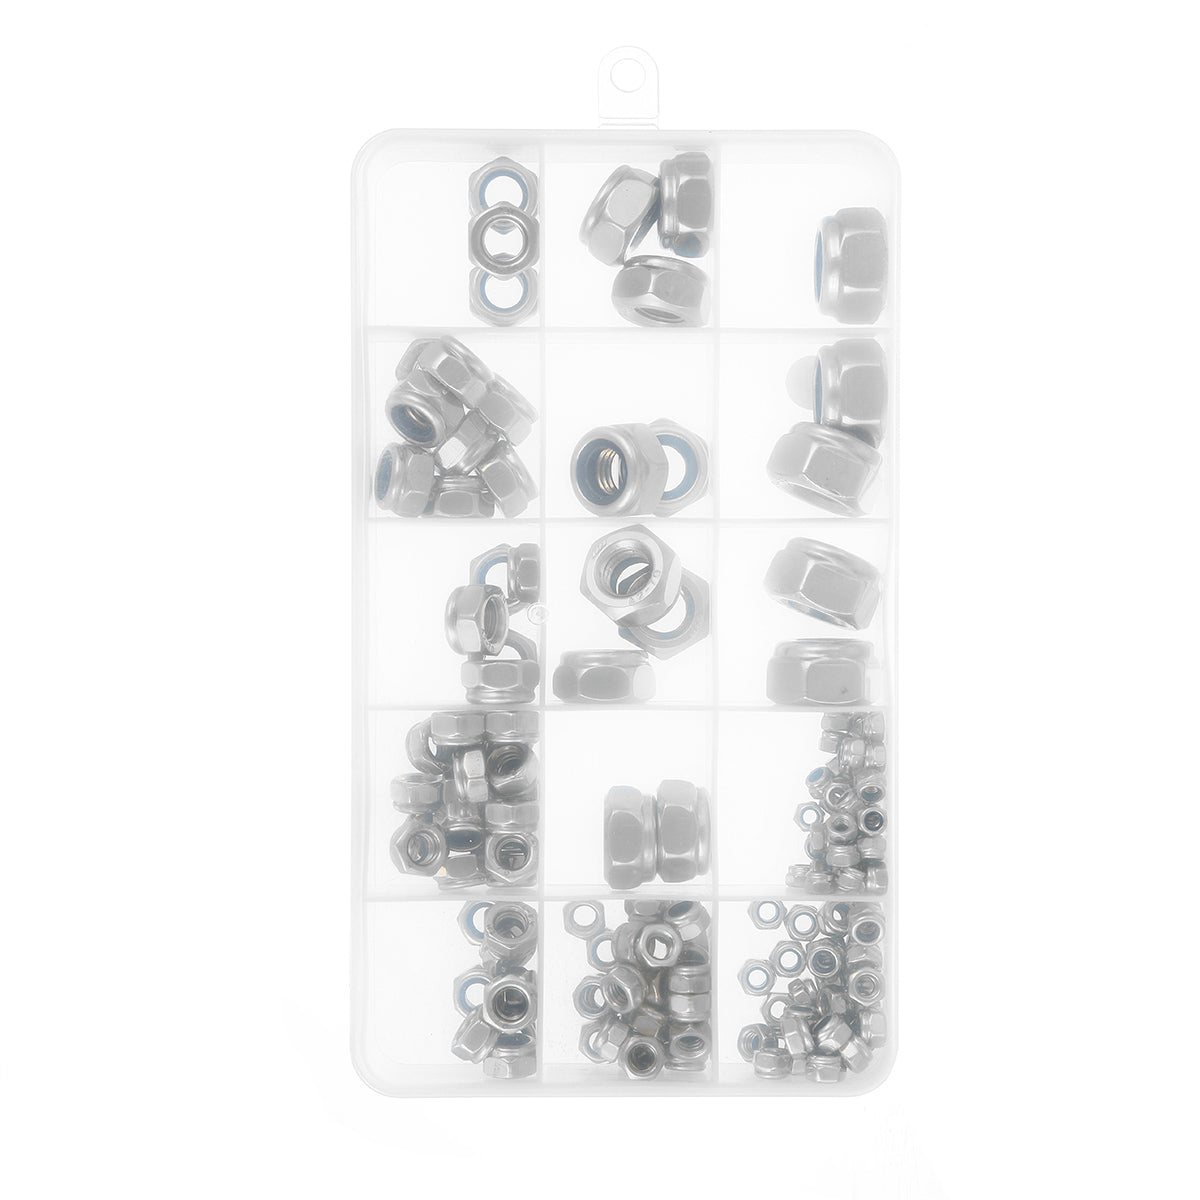 Gray 170Pcs Stainless Steel Lock Nut Assortment M3/4/5/6/8/10/12 Nylon Insert Kit